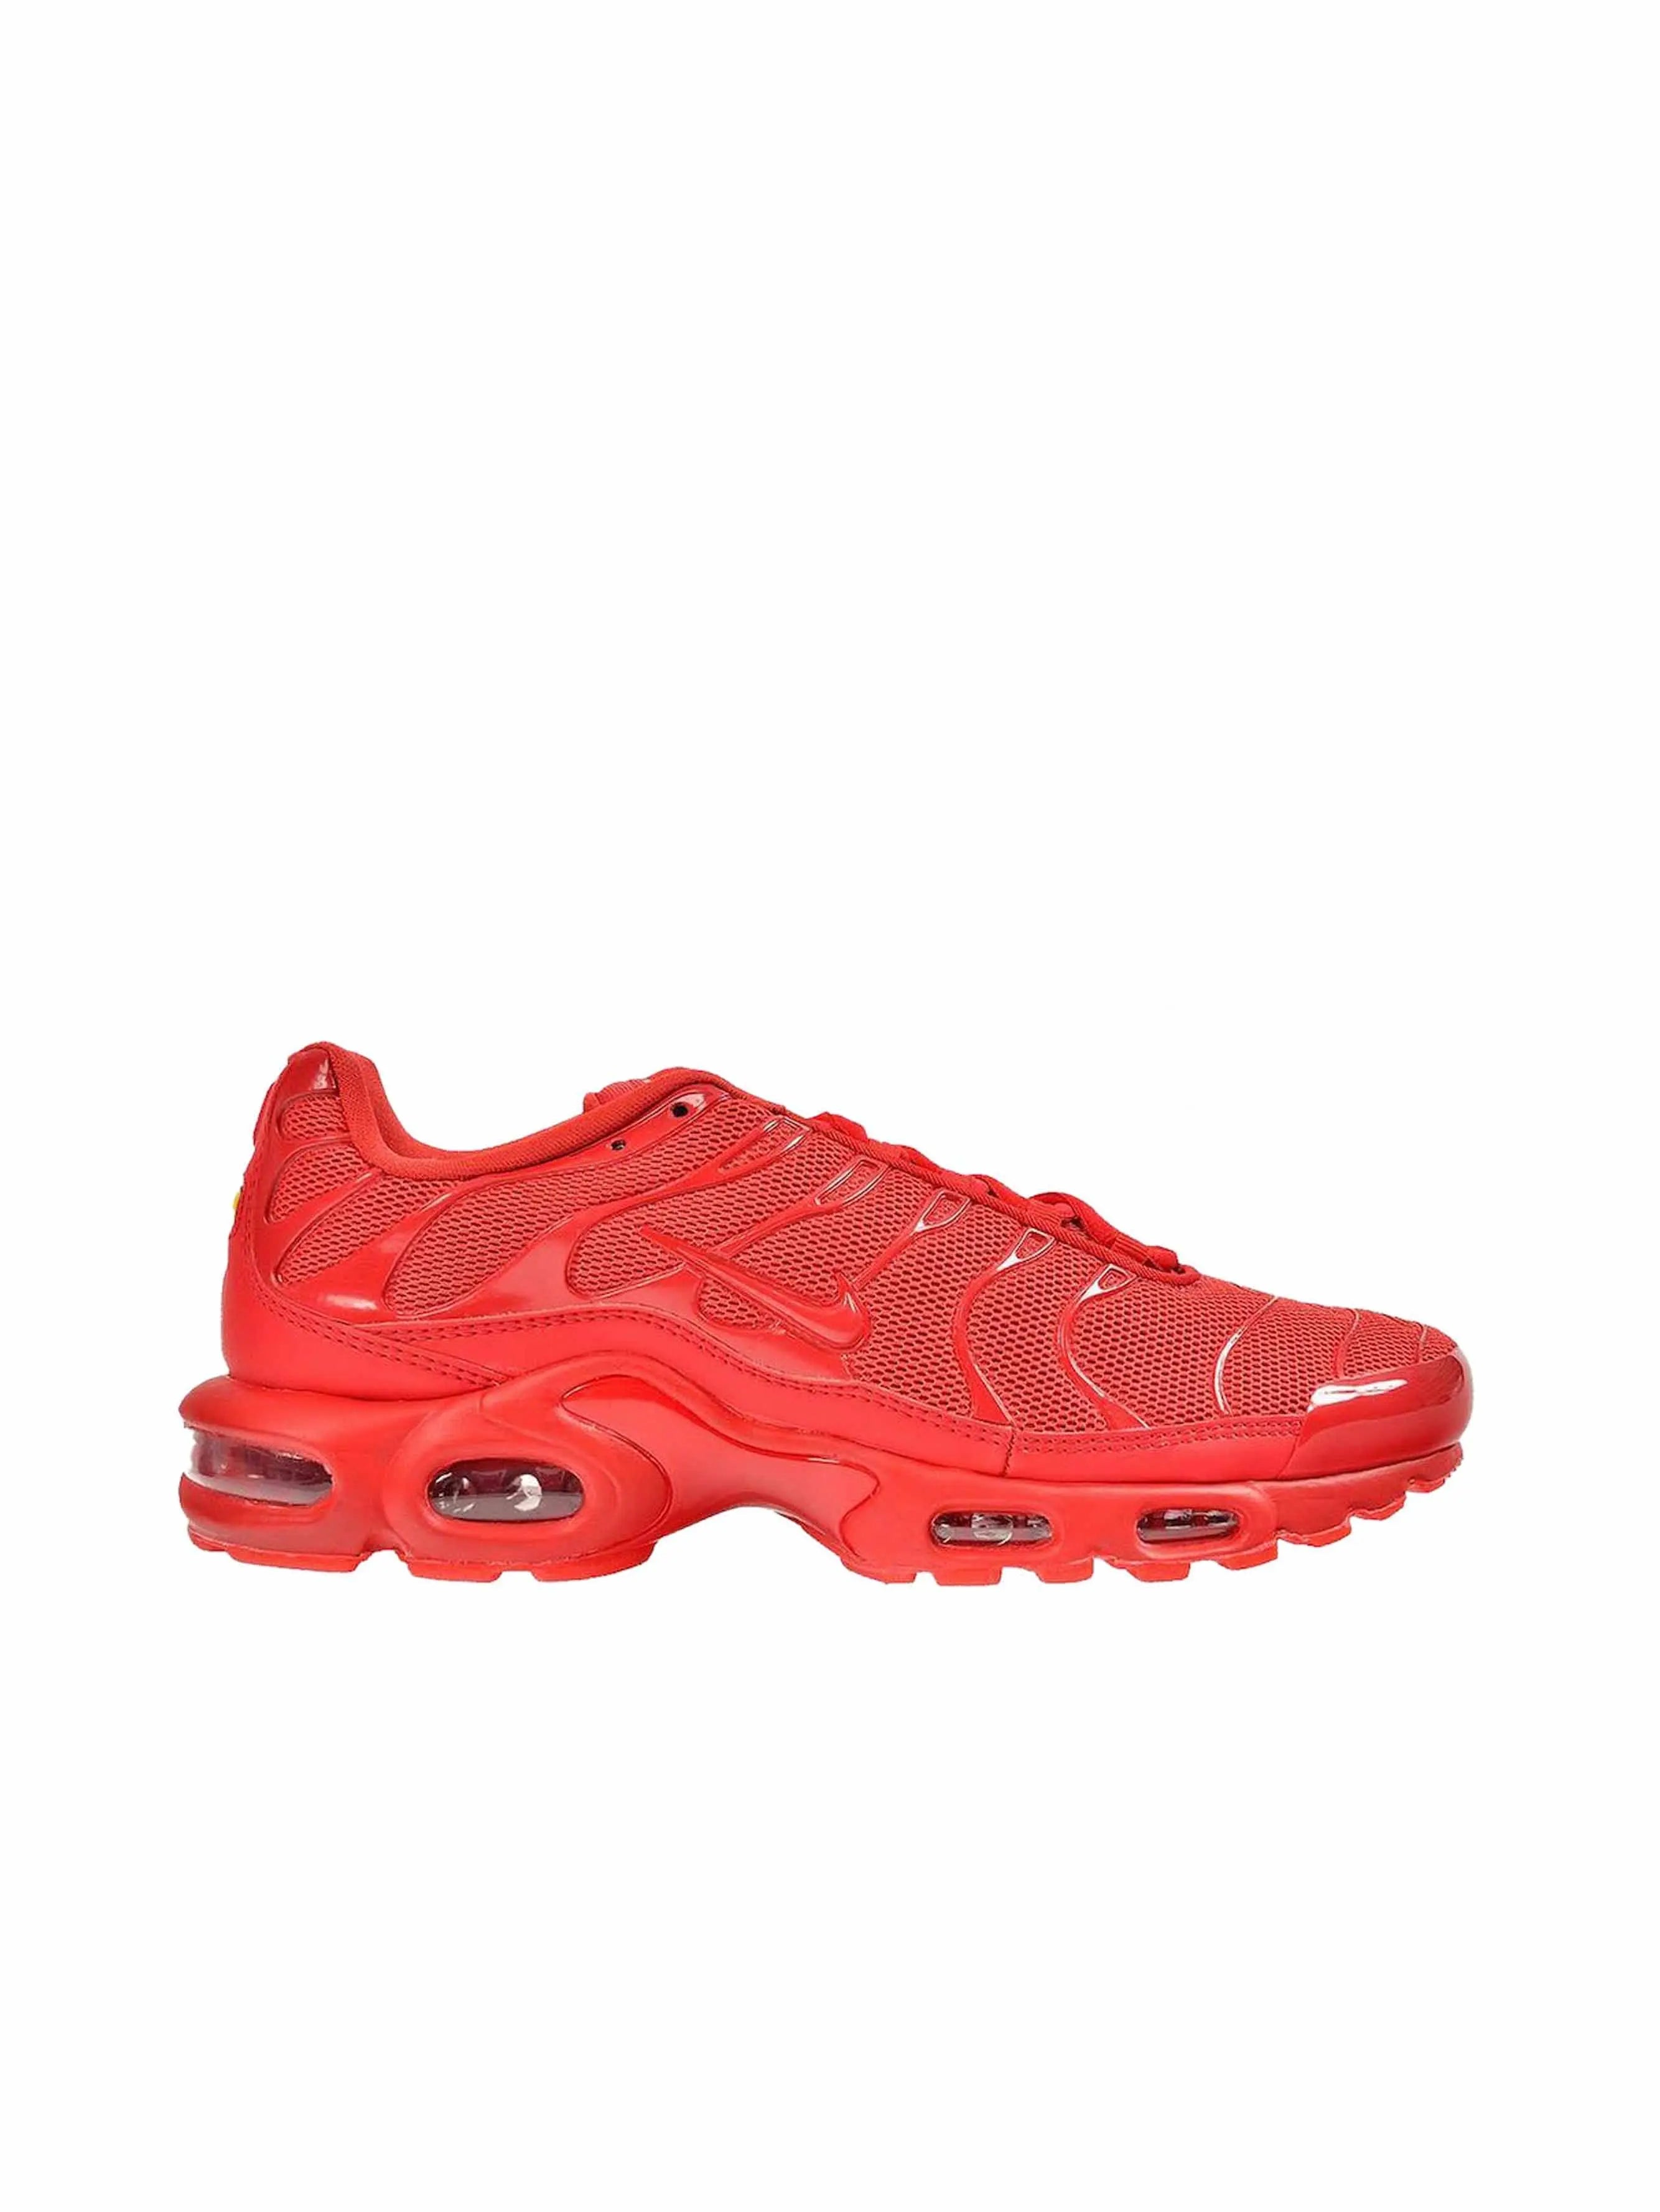 Nike Air Max Plus (Lava Red) - Sneaker Freaker